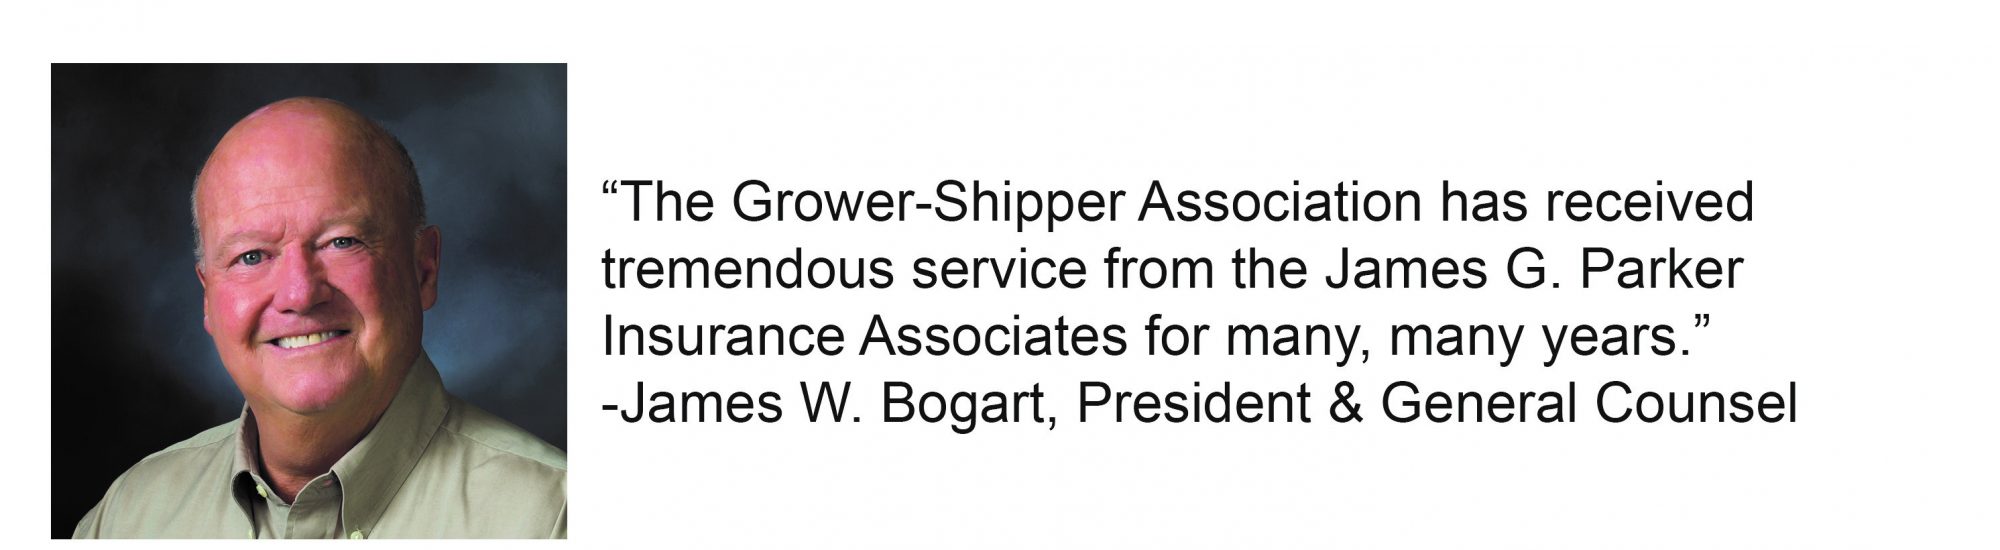 Grower-Shipper Association testimonial